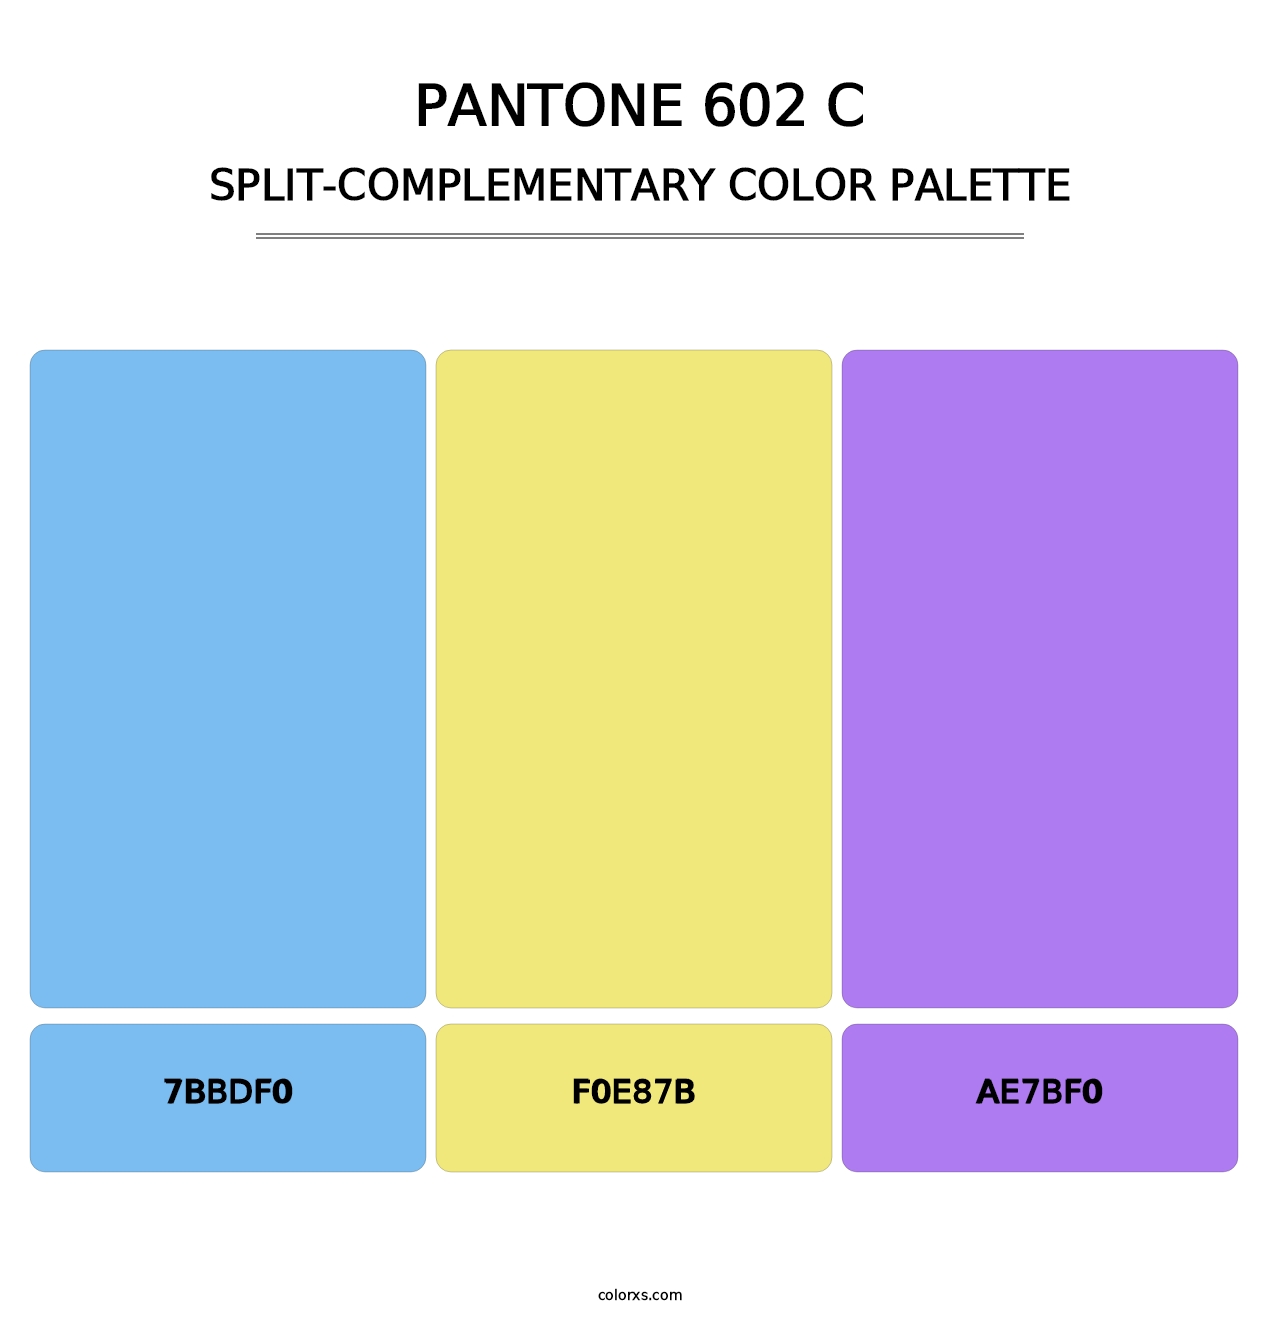 PANTONE 602 C - Split-Complementary Color Palette